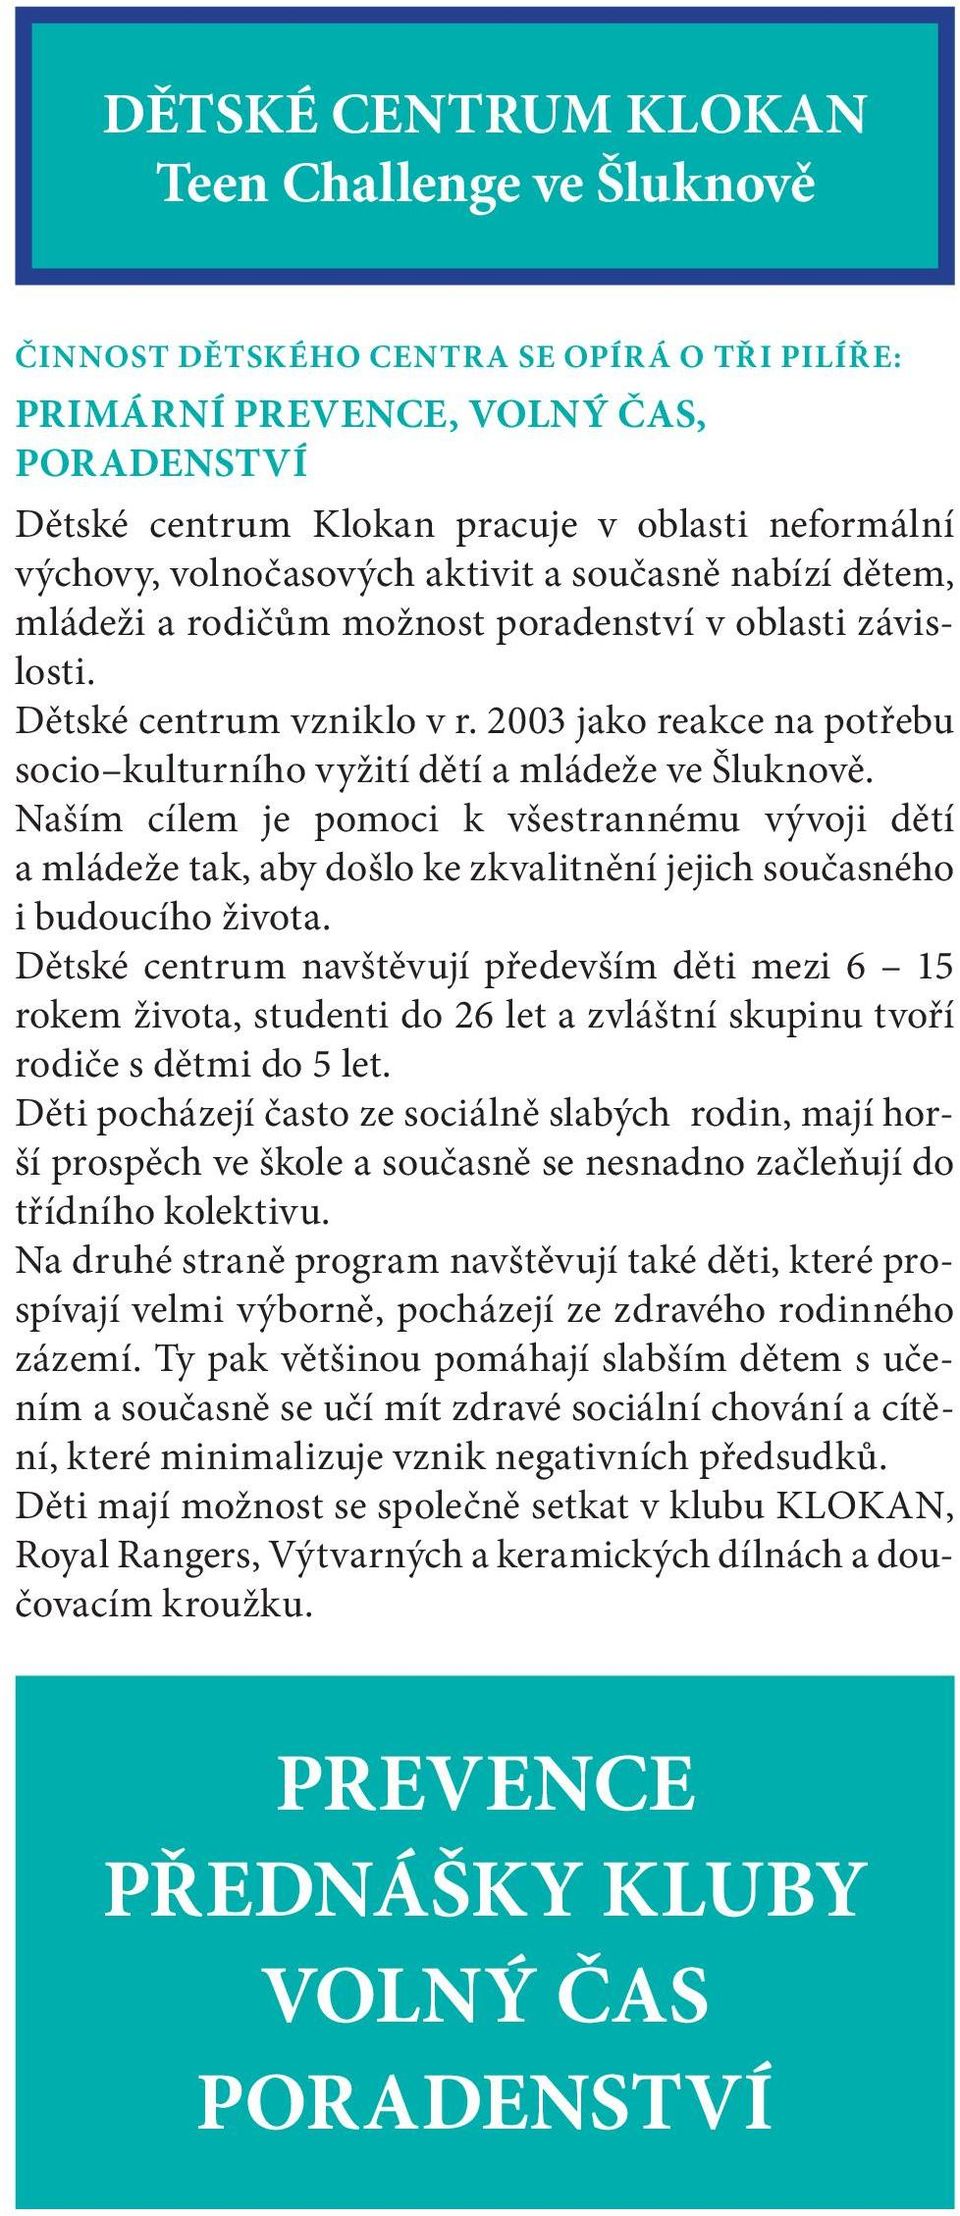 2003 jako reakce na potřebu socio kulturního vyžití dětí a mládeže ve Šluknově.